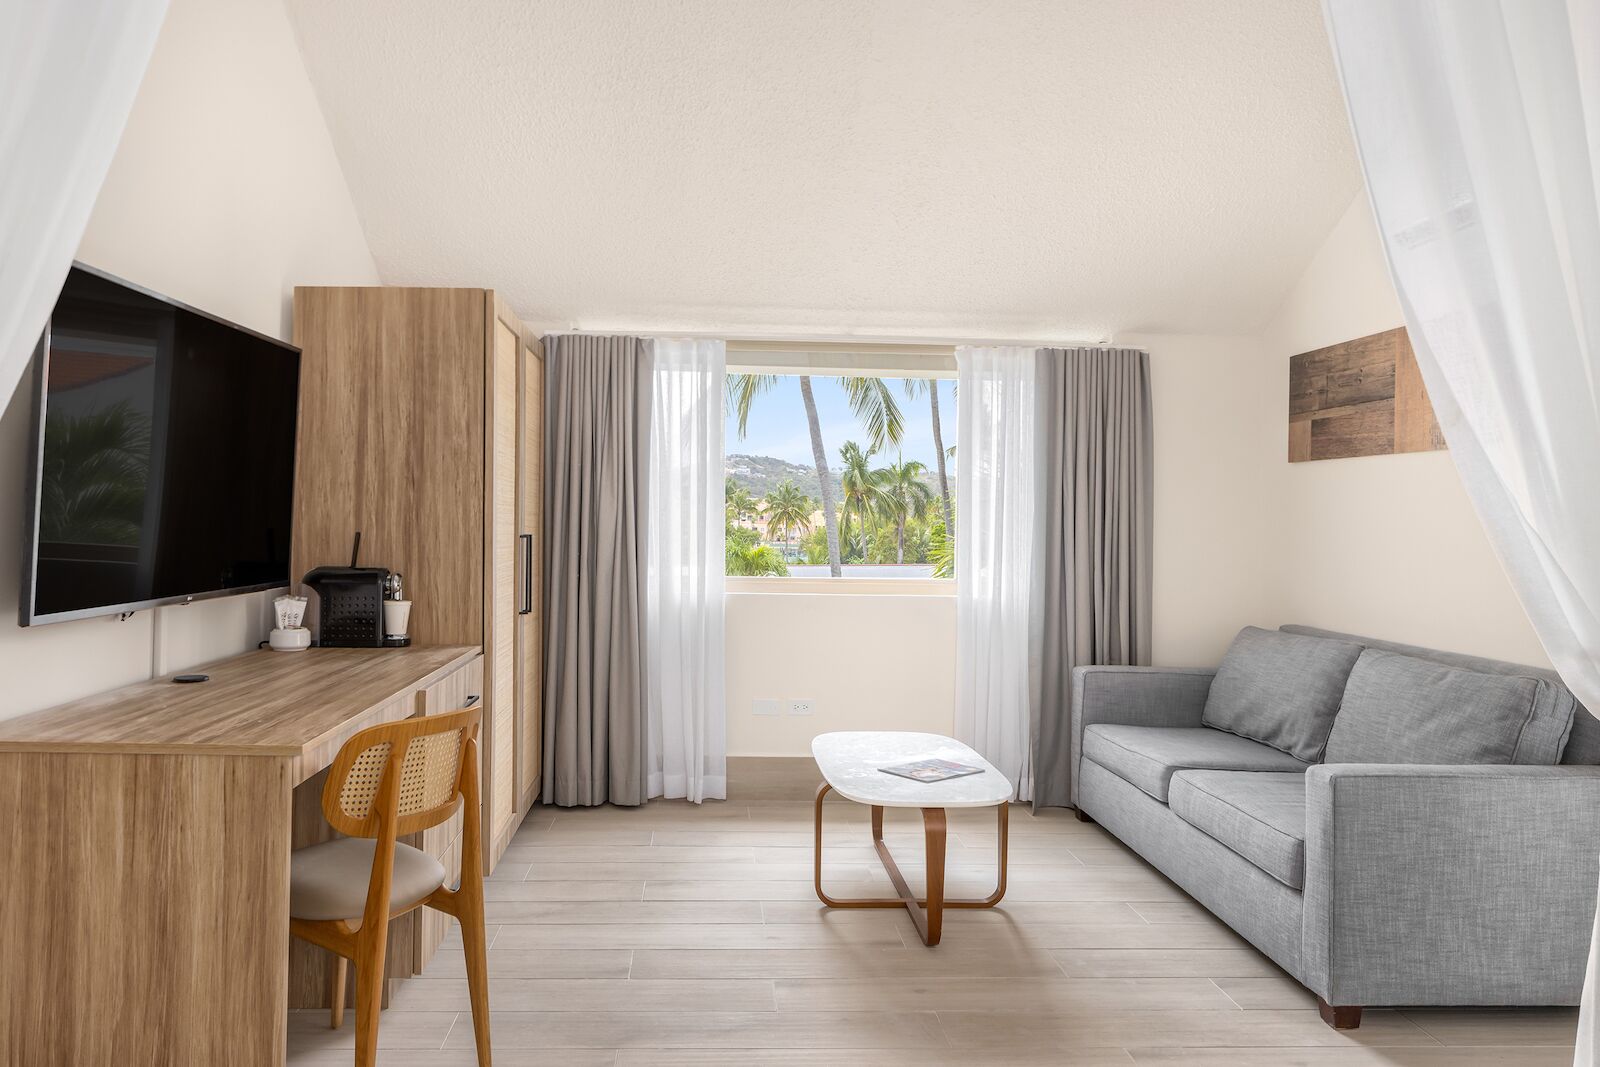 playa suite living room at wyndham palmas in puerto rico